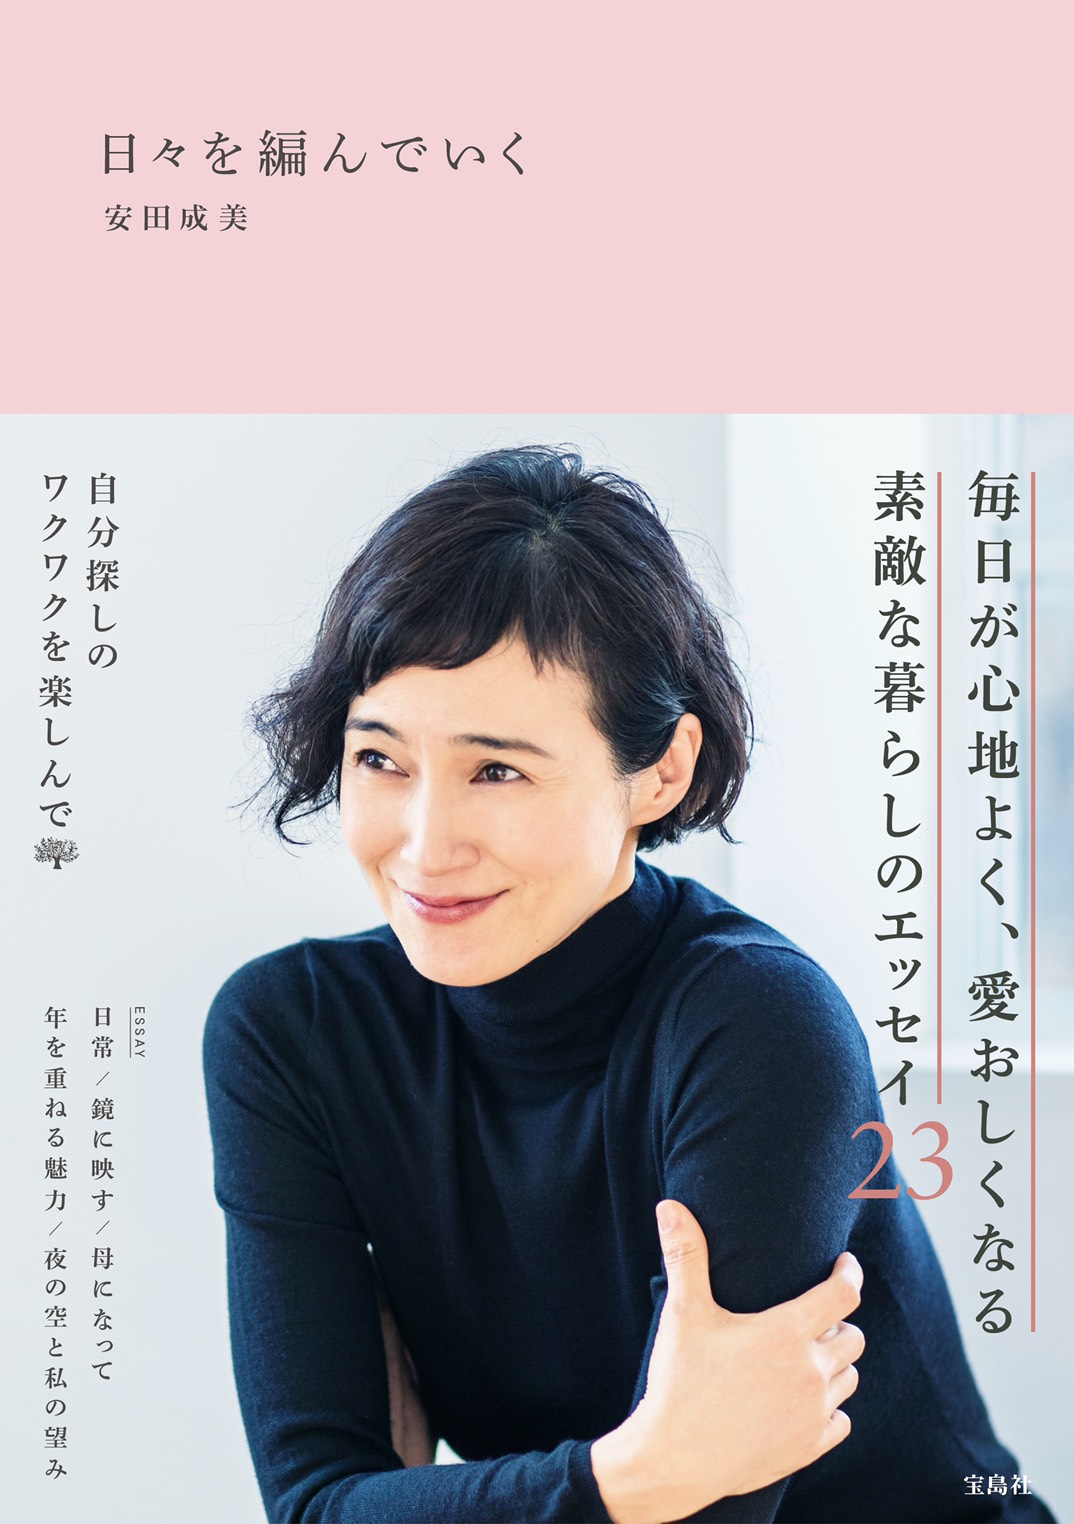 女優・安田成美がエッセイ『日々を編んでいく』発売。サイン会の開催も決定サムネイル画像!